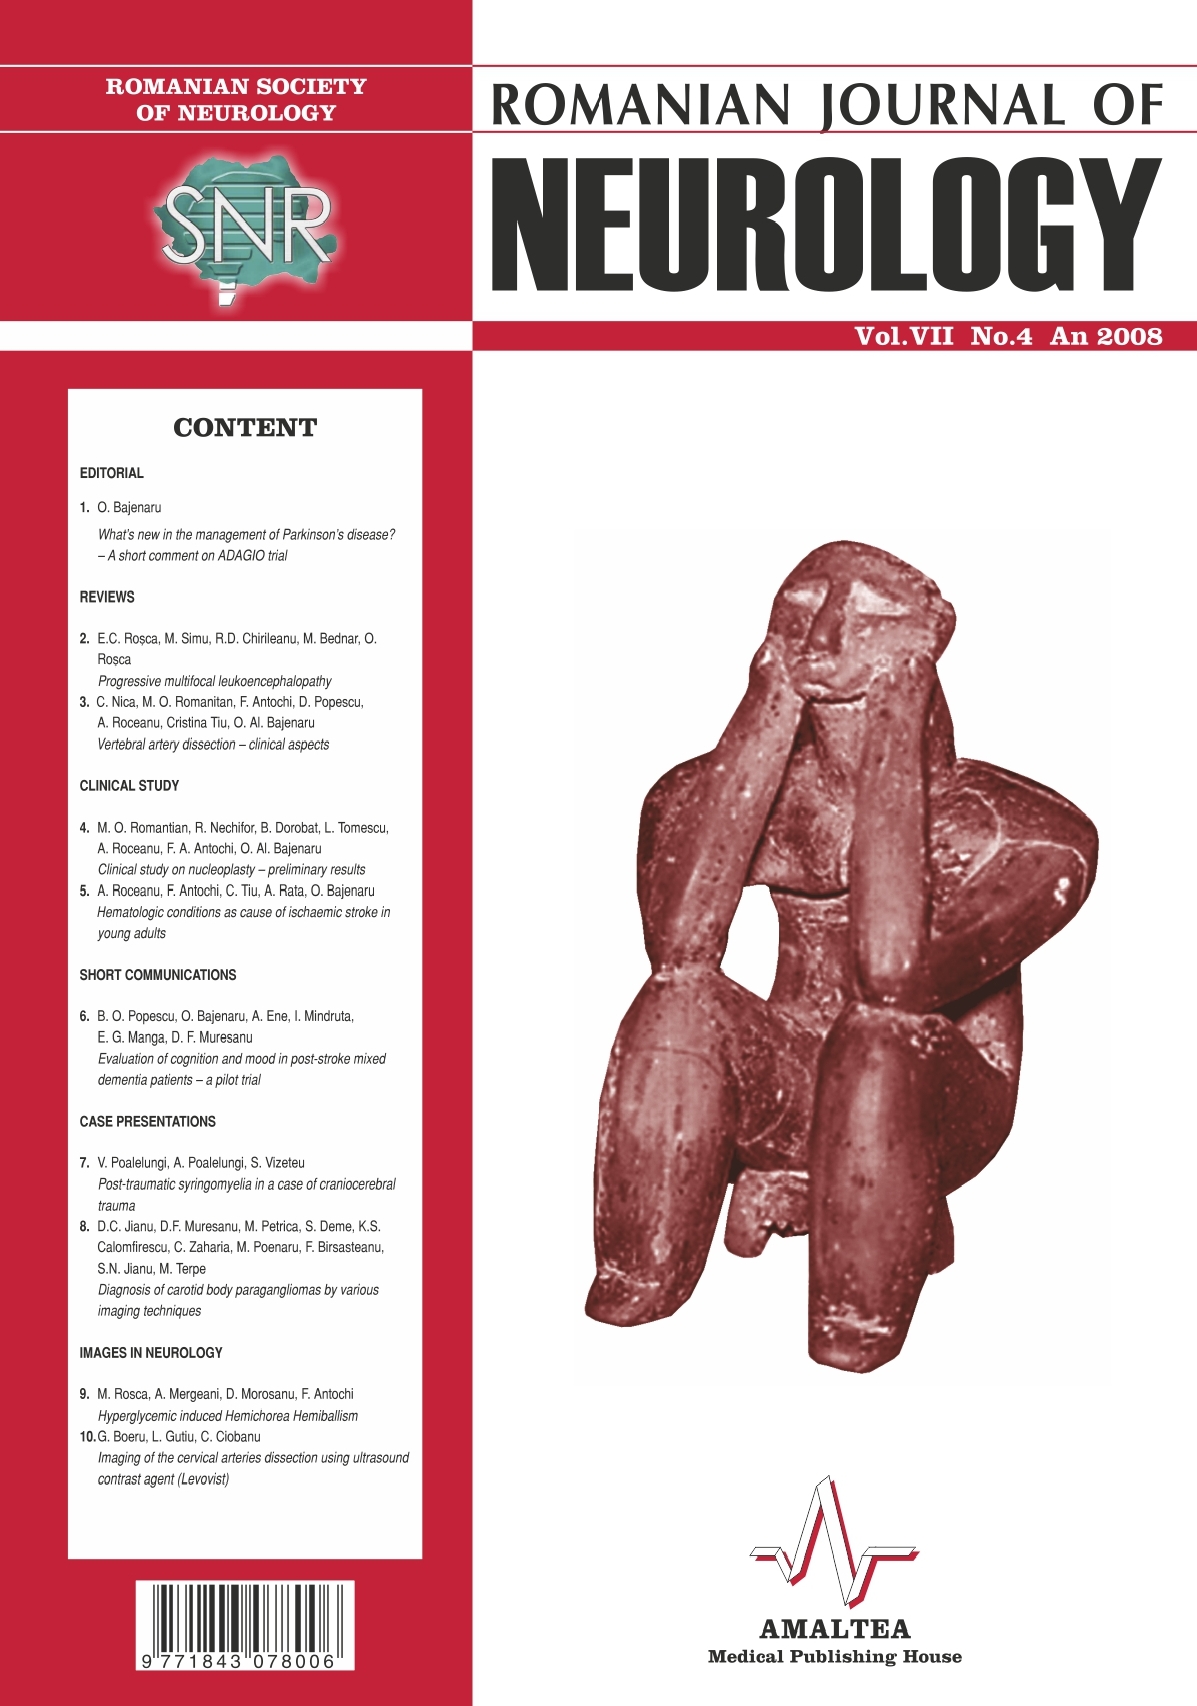 Romanian Journal of Neurology, Volume VII, No. 4, 2008